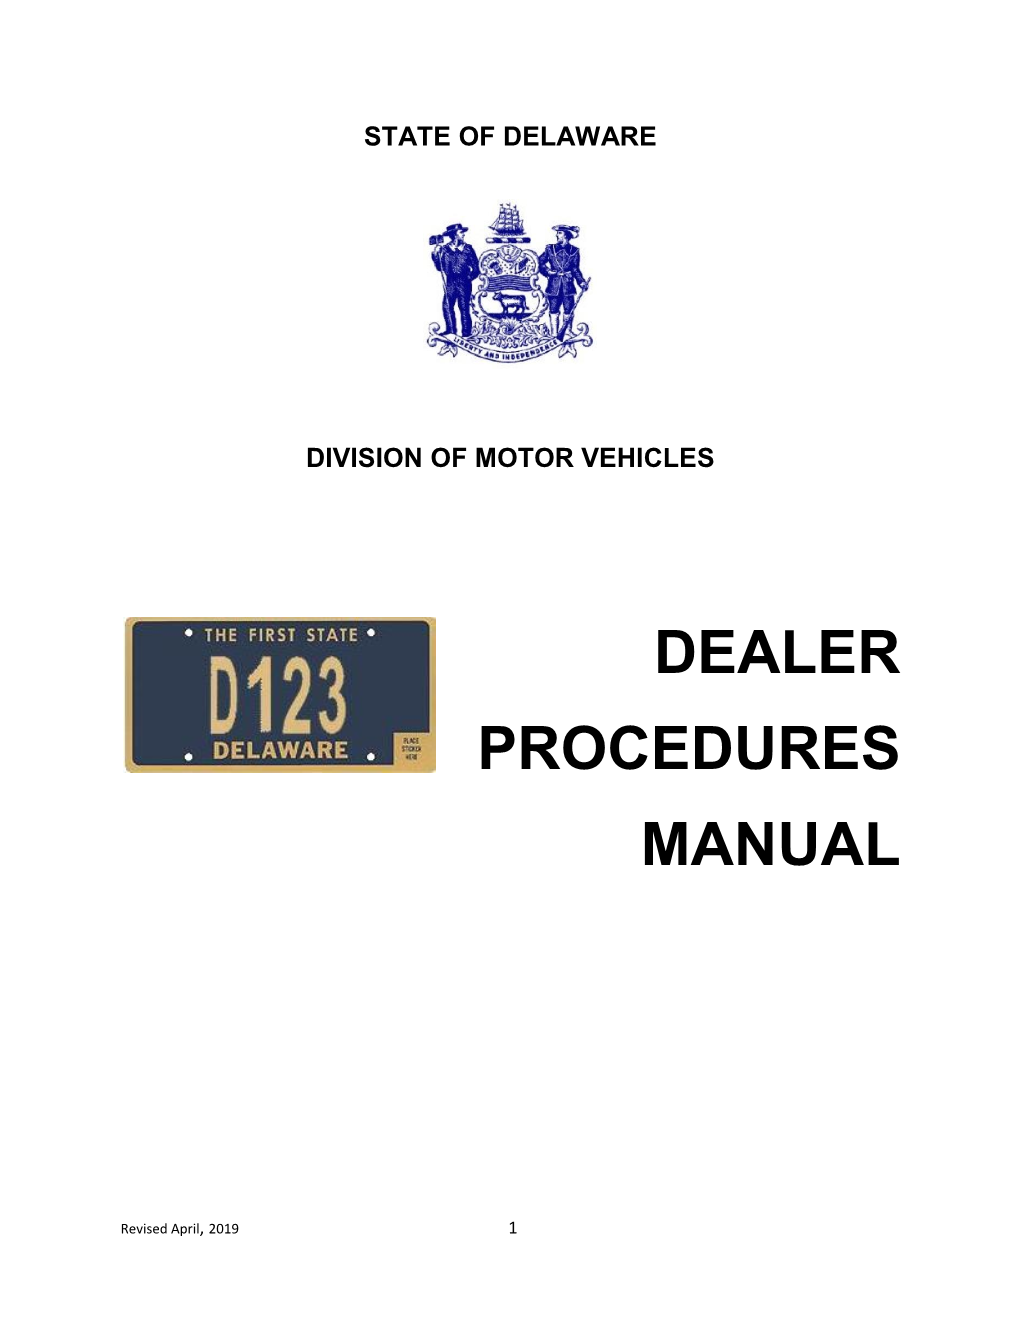 Dealer Procedures Manual